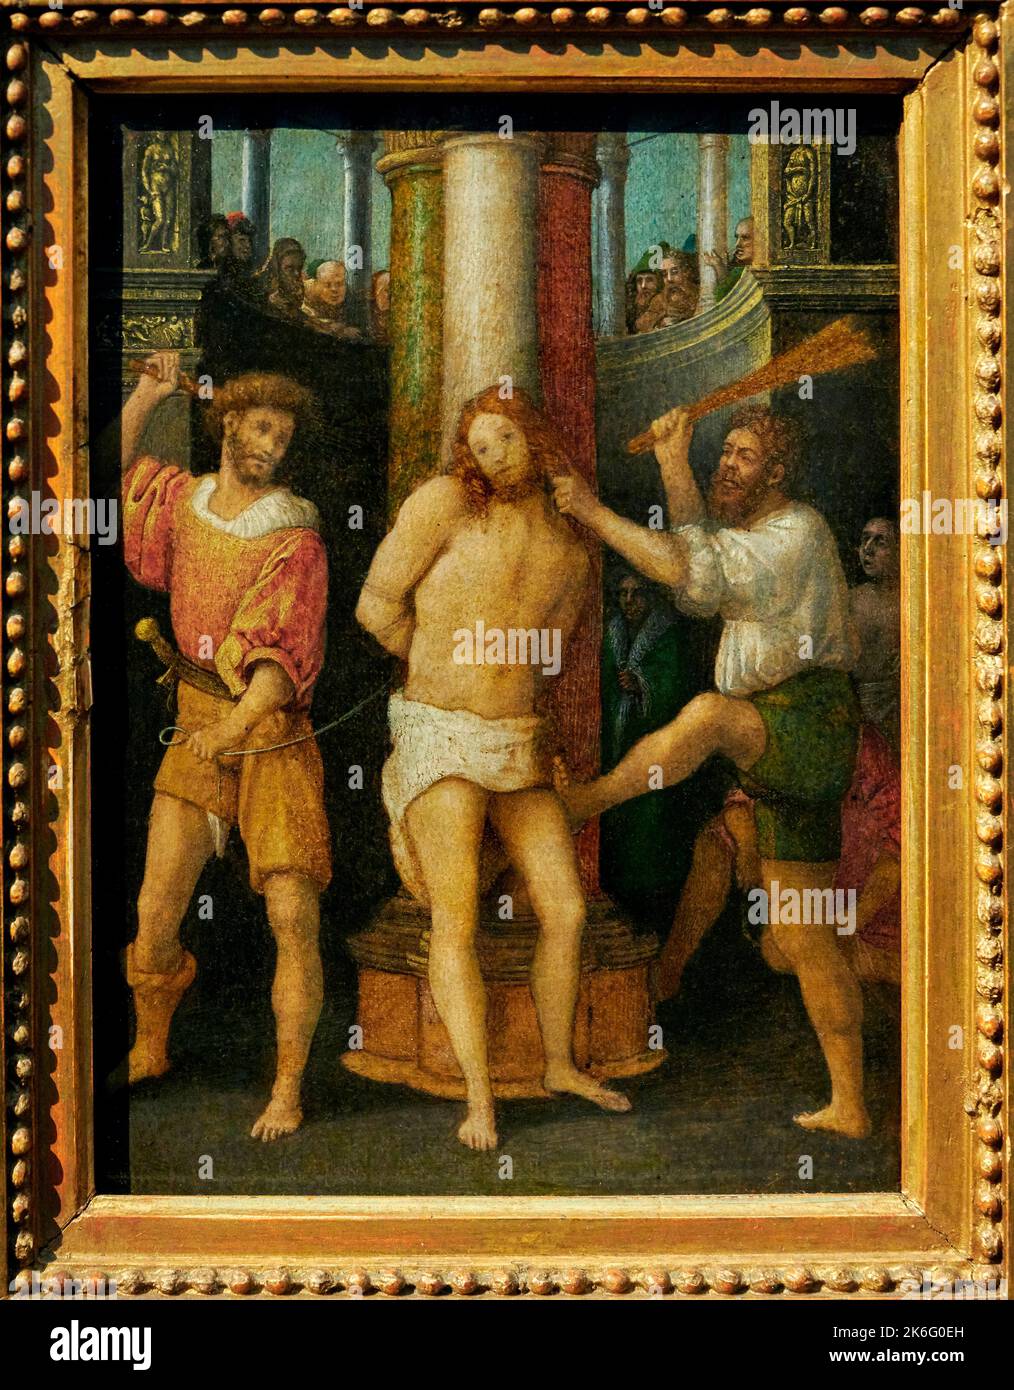 Flagellazione di Cristo - tempera su pergamena incollata su tela e applicata su tavola - Giovan Francesco Caroto - 1515 - Milano, Italia, Museo Poldi Banque D'Images